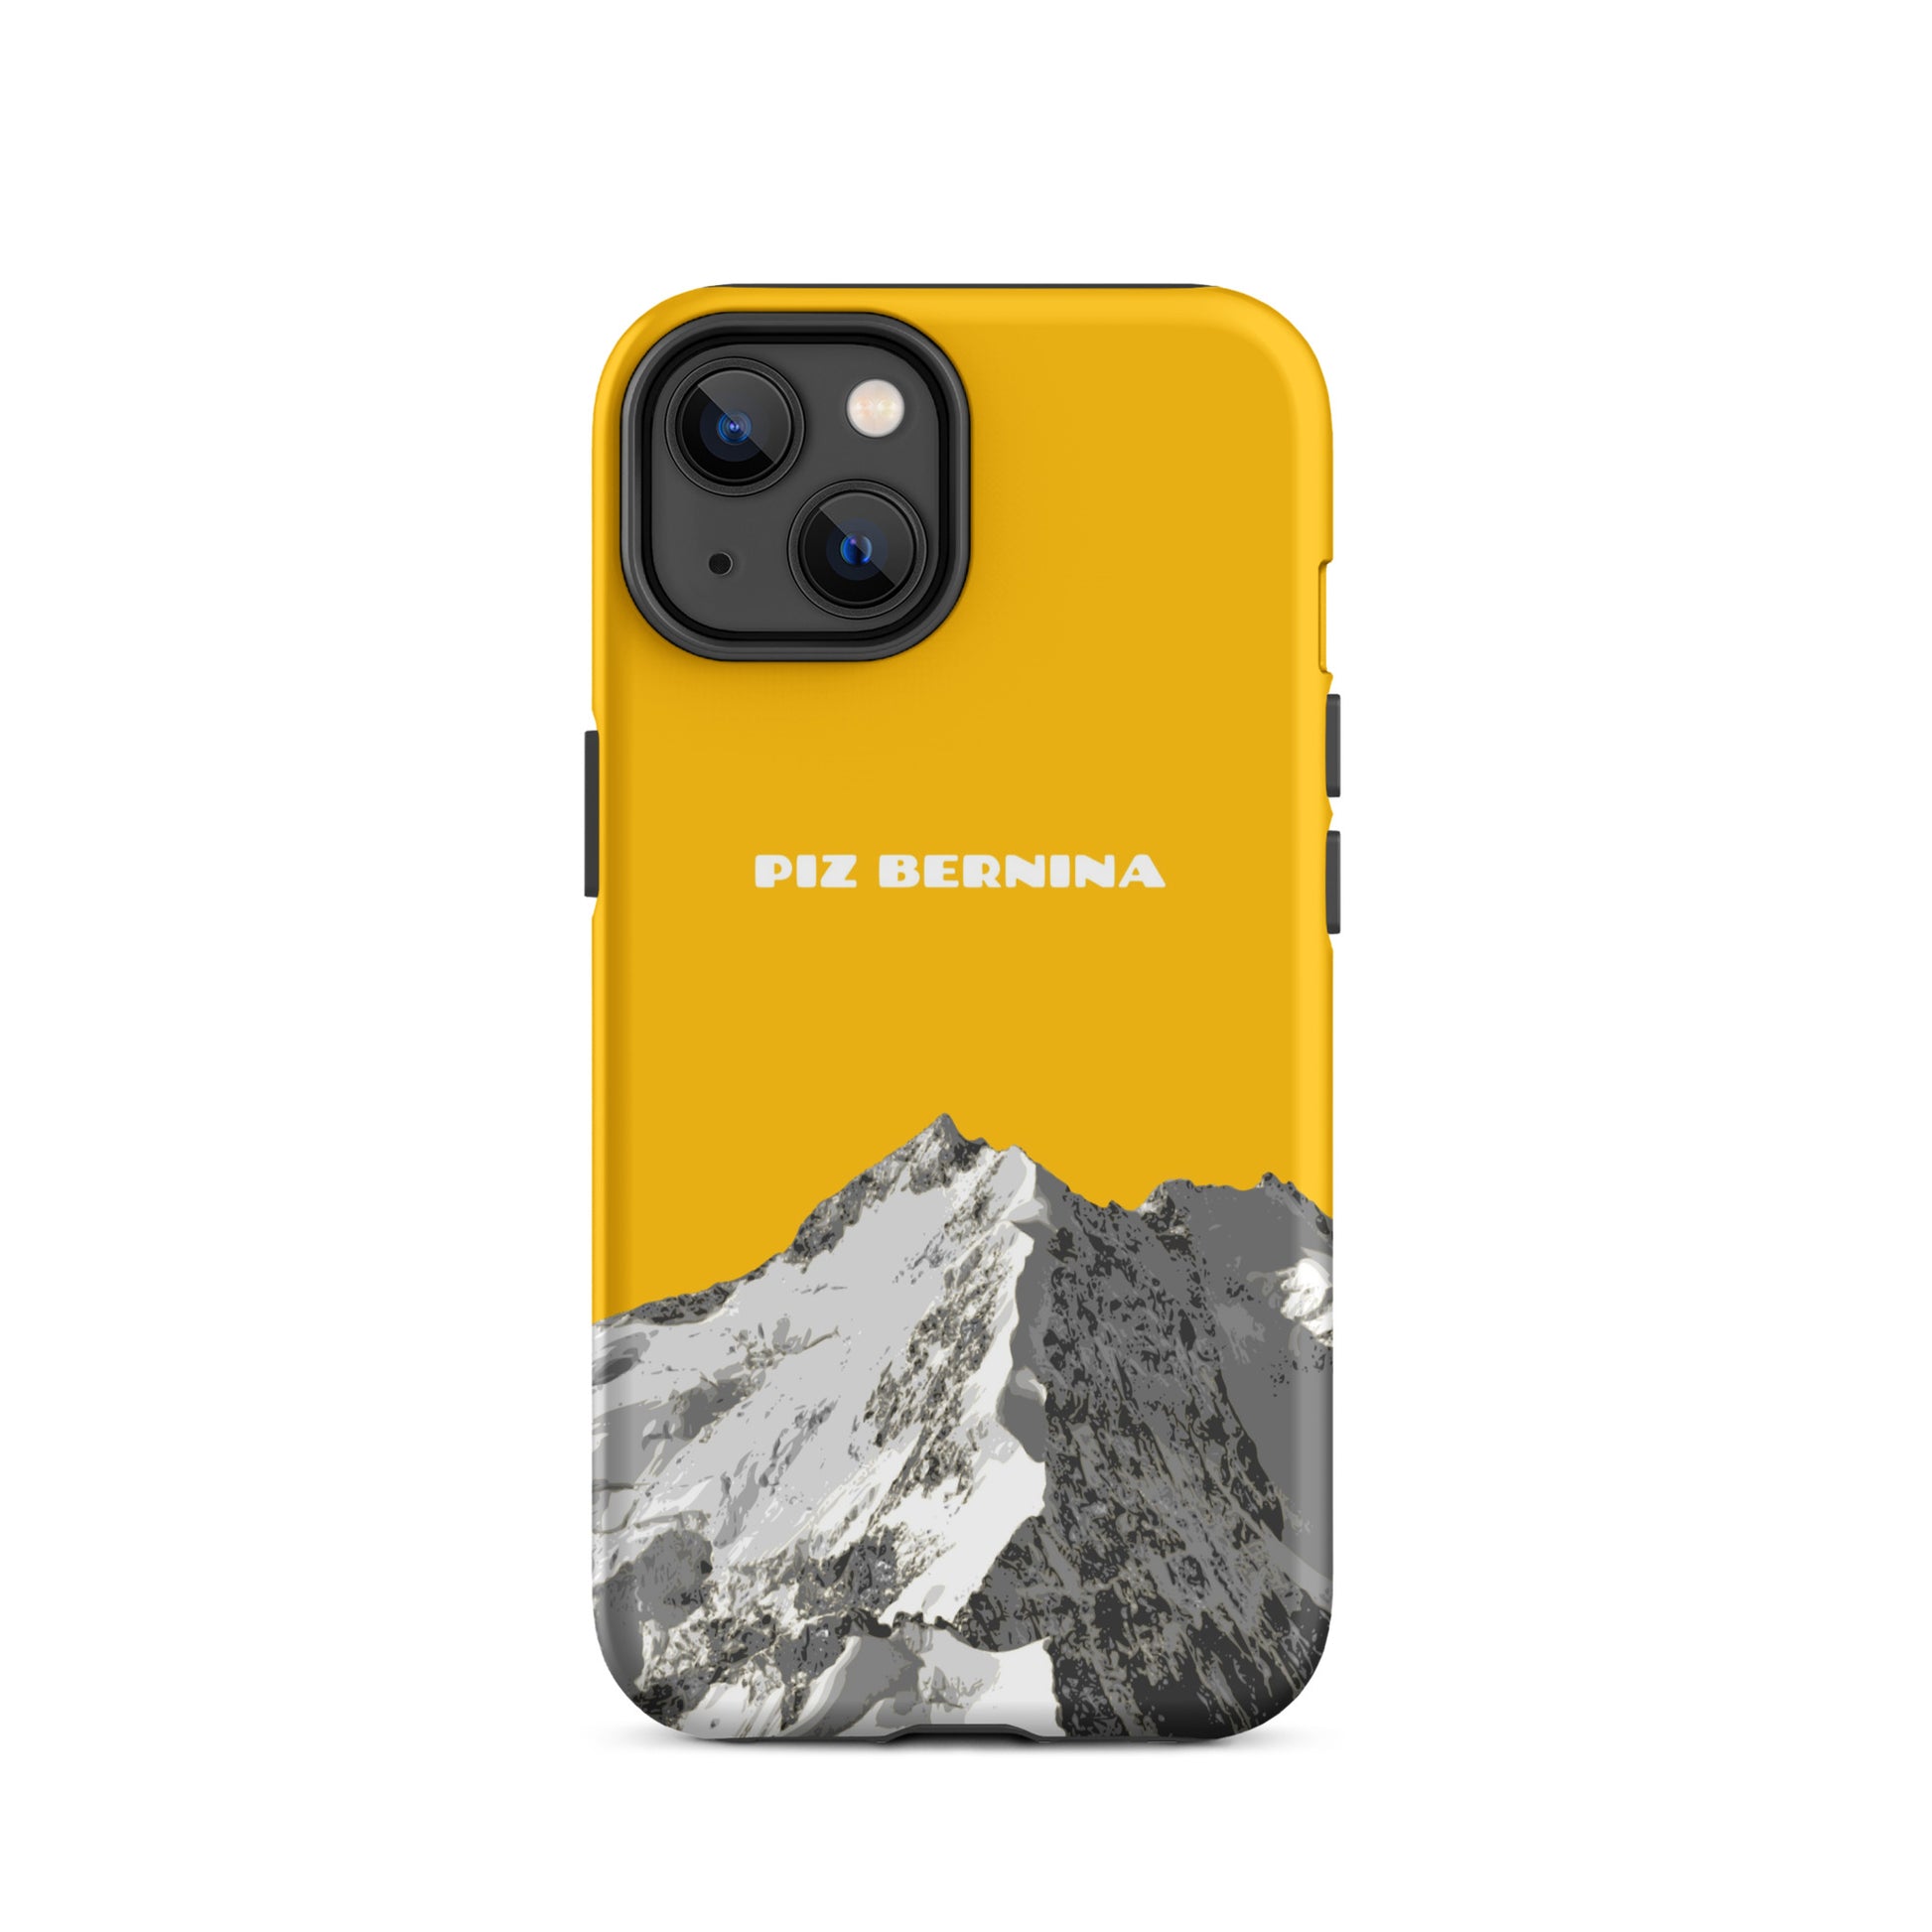 Hülle für das iPhone 14 von Apple in der Farbe Goldgelb, dass den Piz Bernina in Graubünden zeigt.